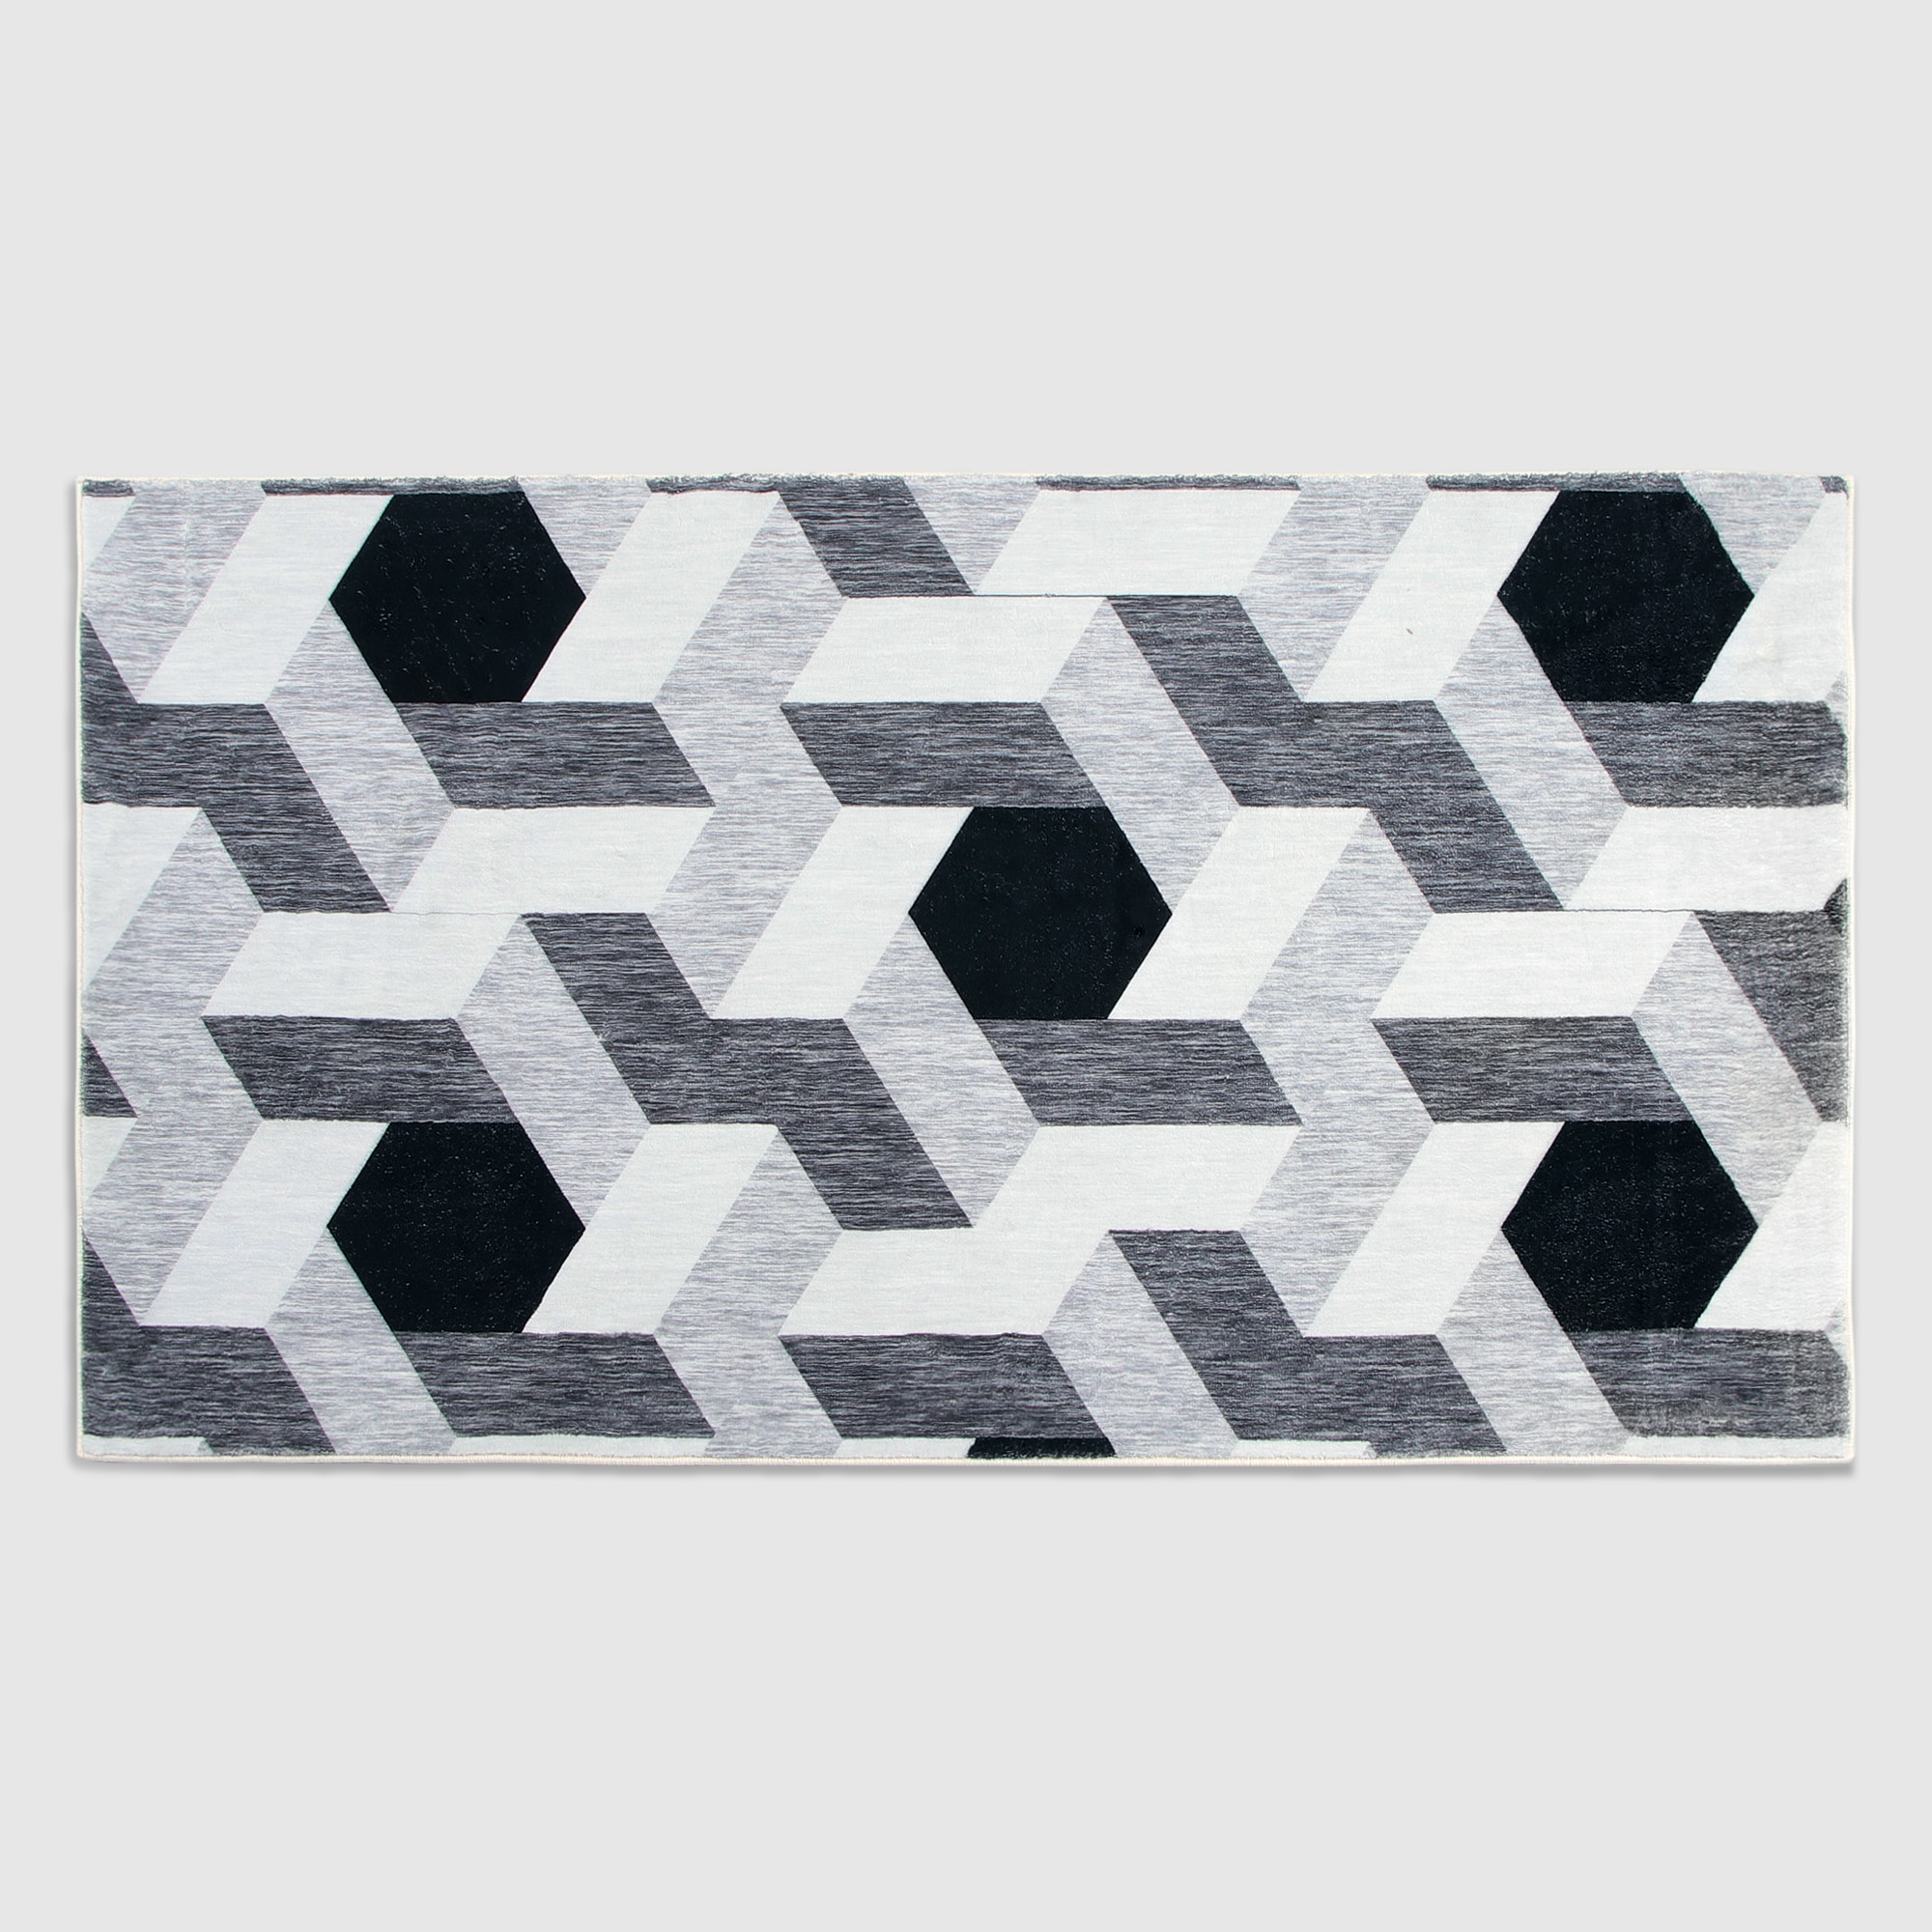 Коврик Silverstone Carpet черно-белой цветовой гаммы 80х150 см